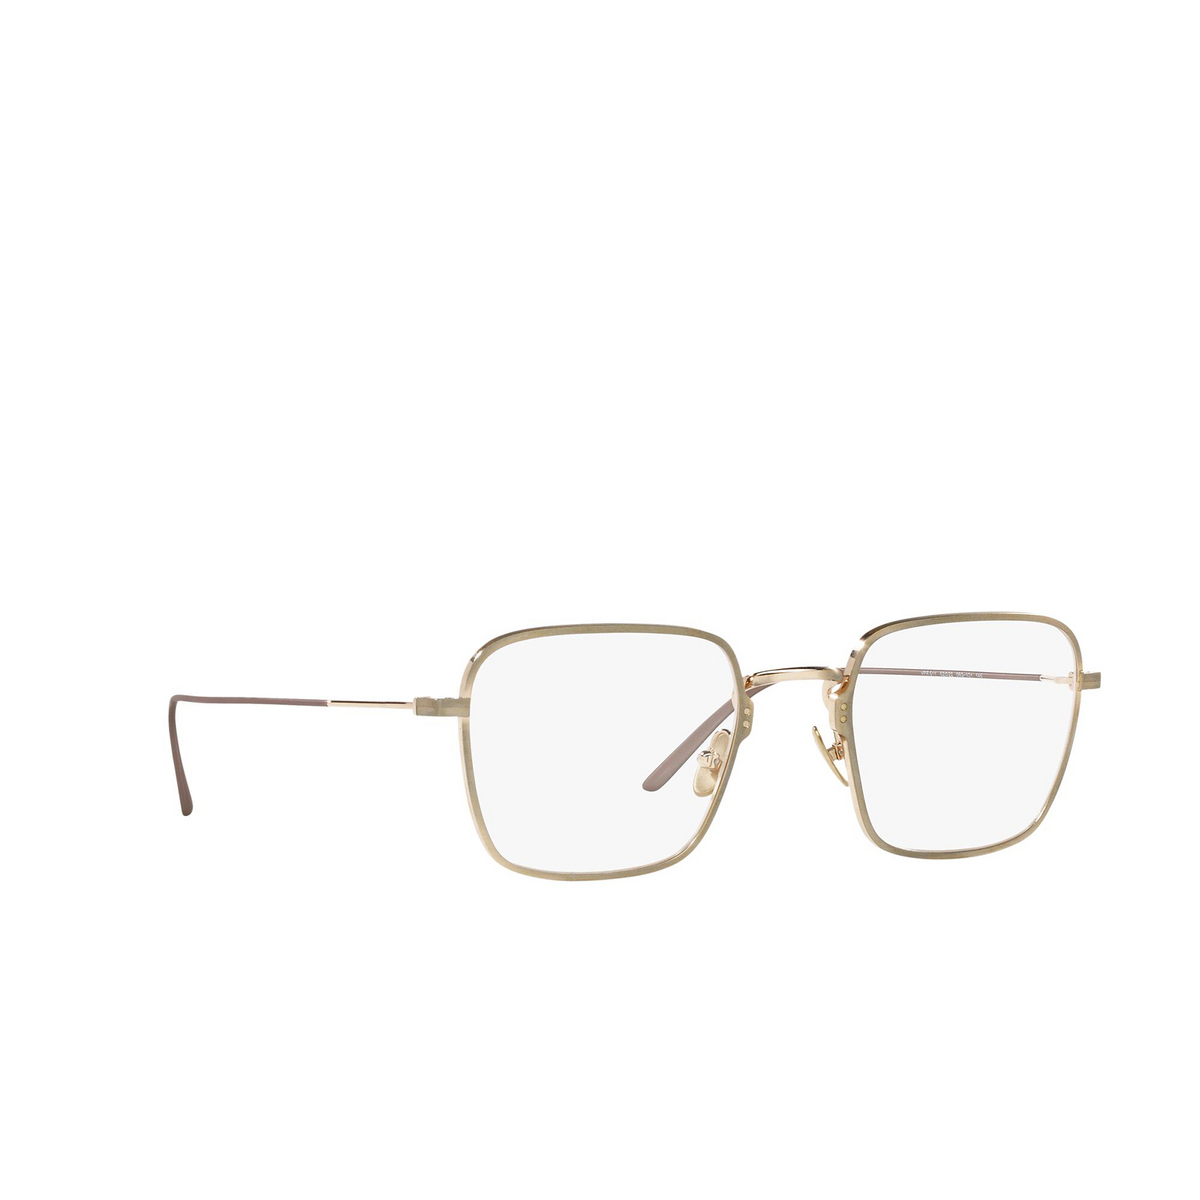 Prada® Square Eyeglasses: PR 51YV color Satin Pale Gold 06Q1O1 - three-quarters view.